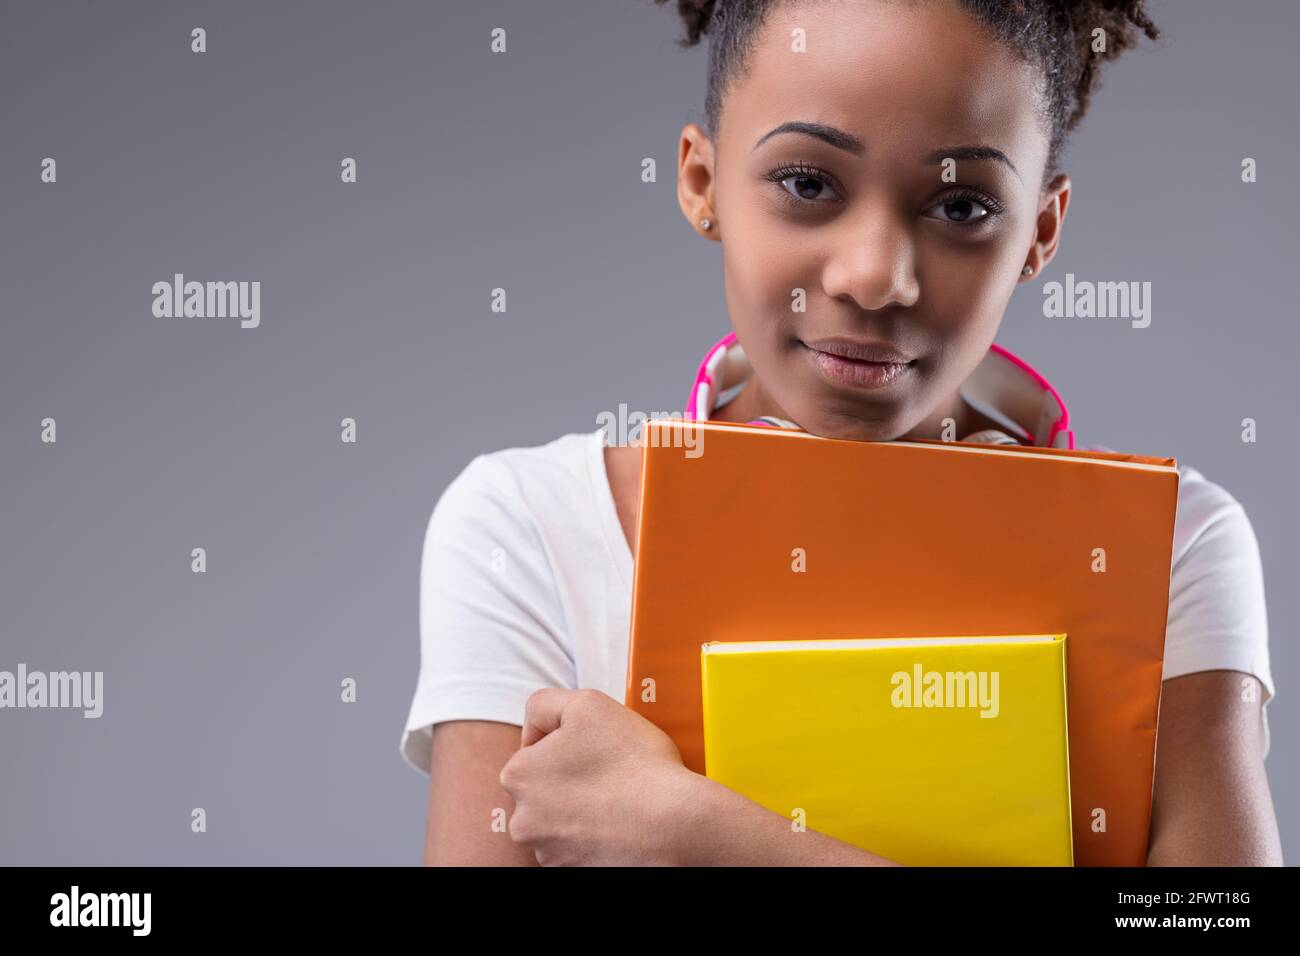 Ernst verantwortlich junge schwarze weibliche Studentin klammernden ihre Bücher als Sie blickt aufmerksam in Nahaufnahme auf die Kamera Beschnittenes Porträt auf einem grauen Studio Stockfoto